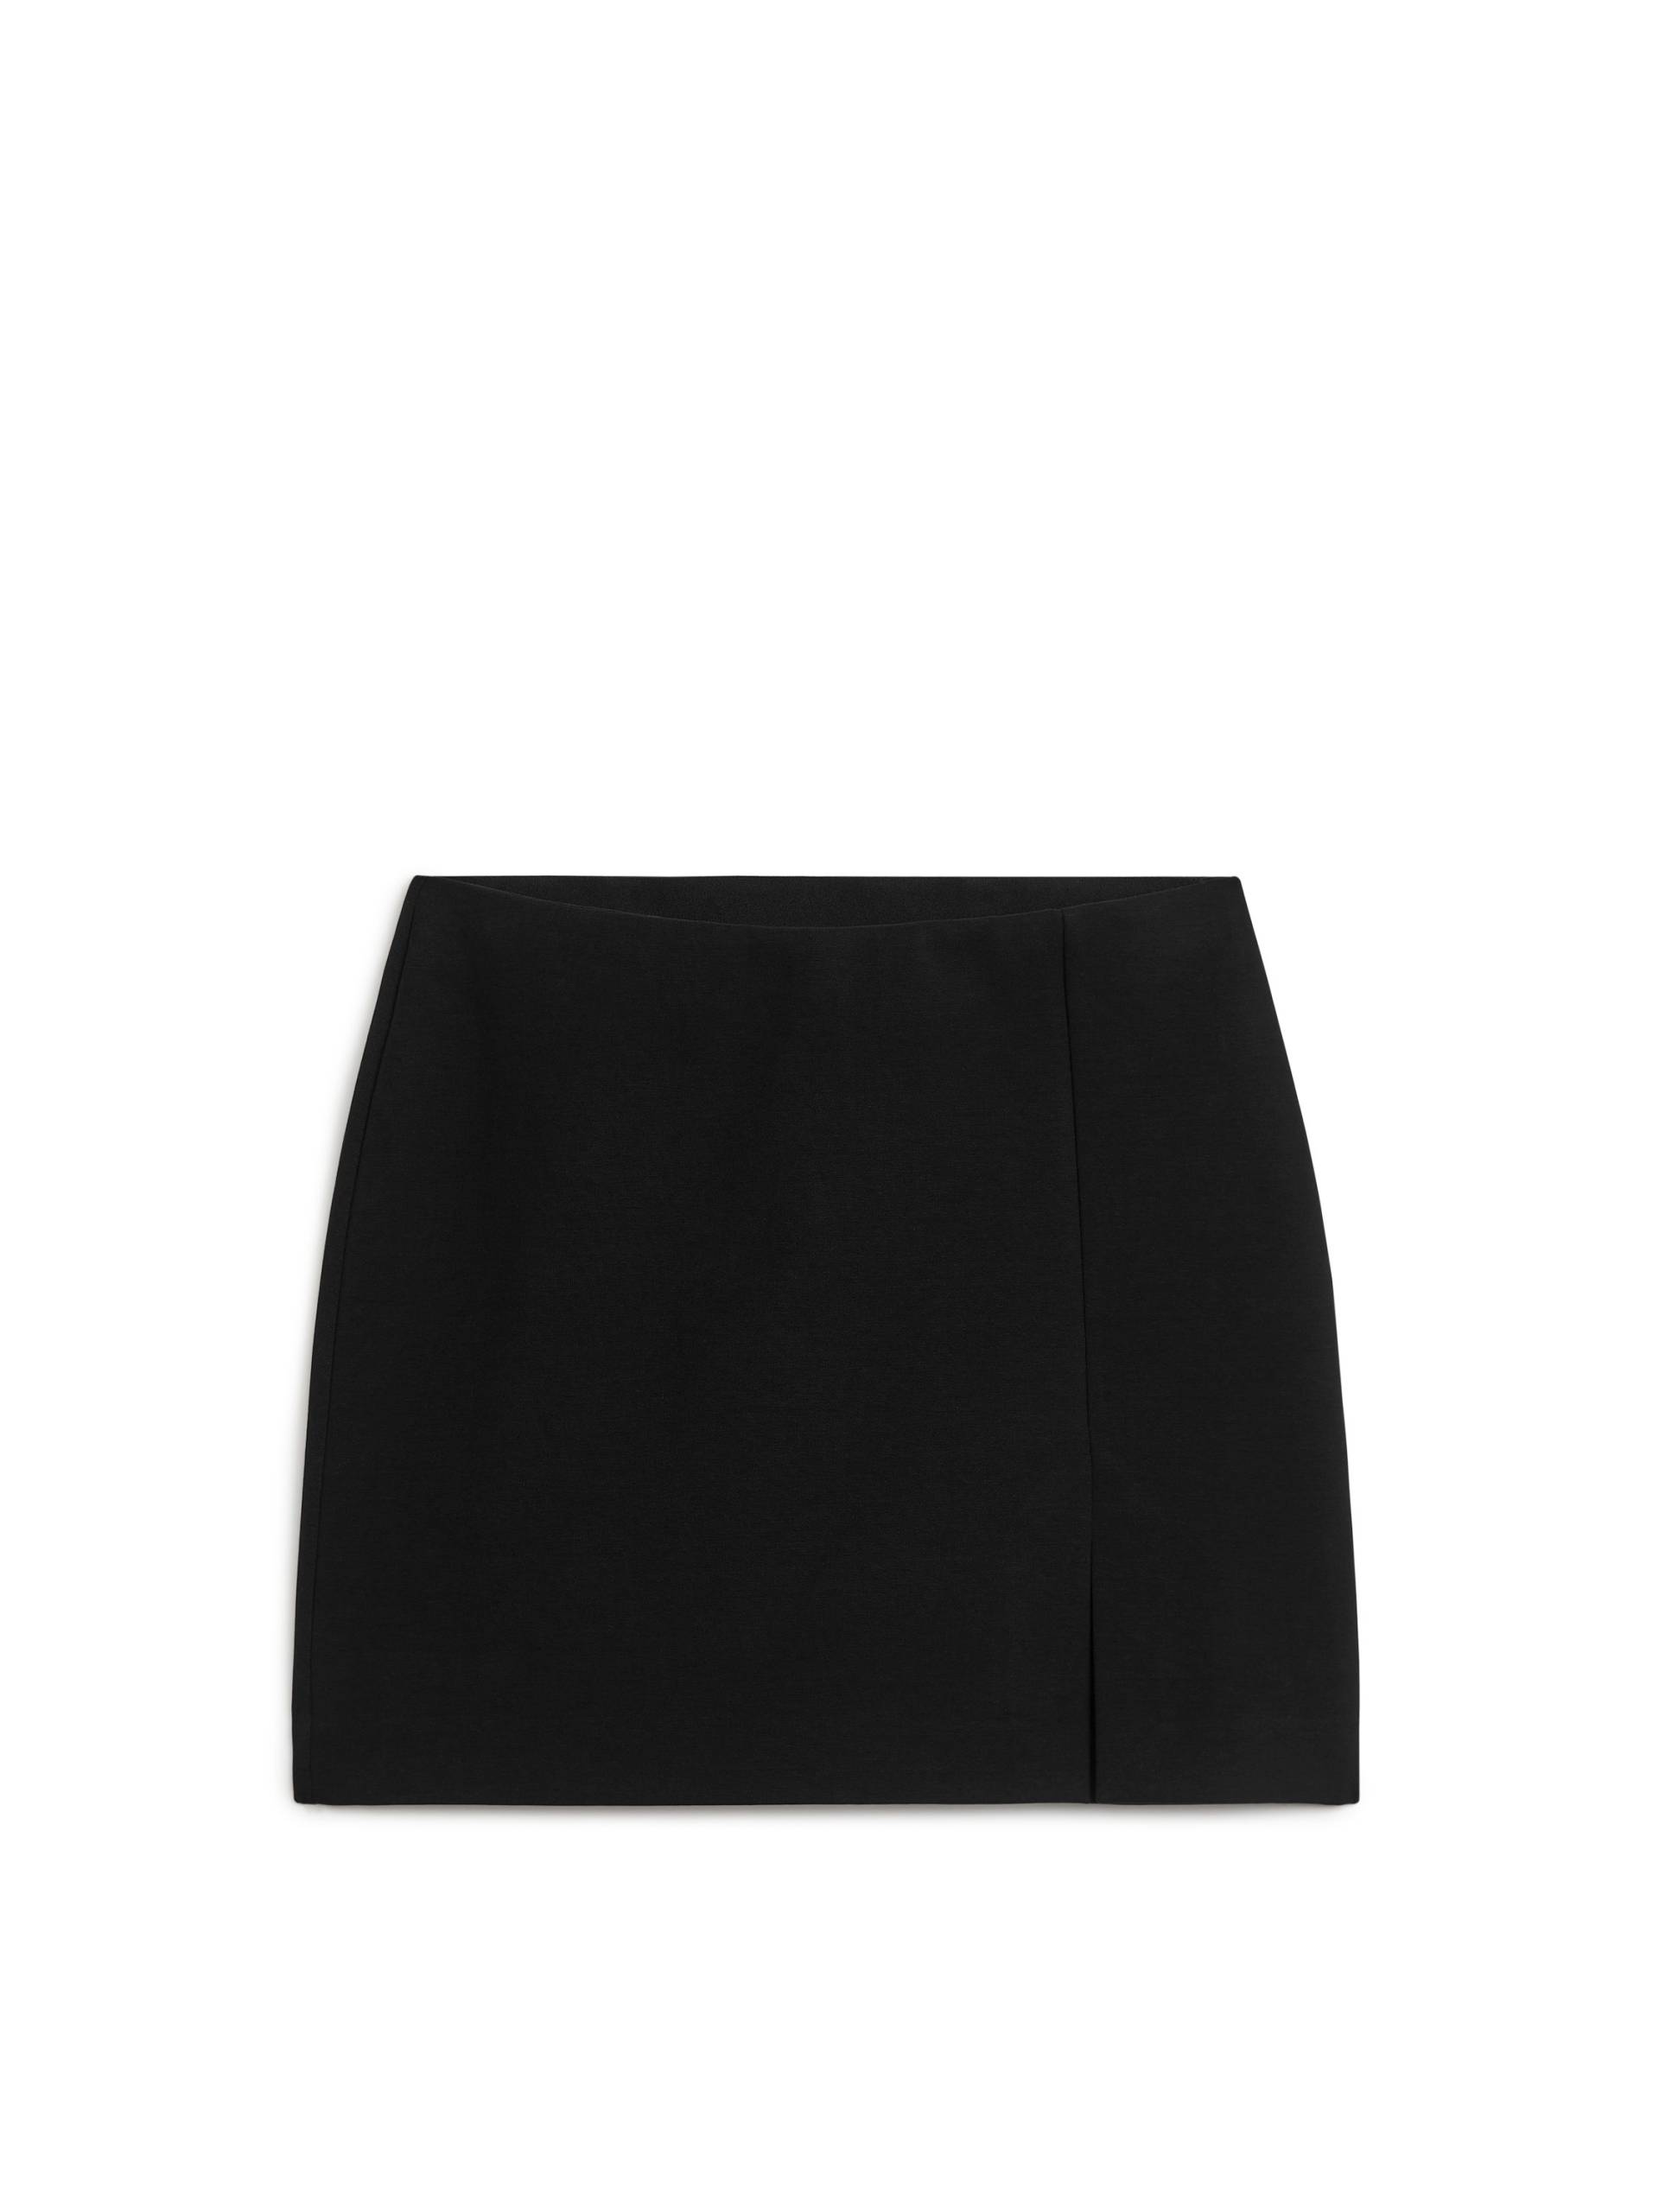 Arket Jersey-Minirock Schwarz, Röcke in Größe M. Farbe: Black von Arket